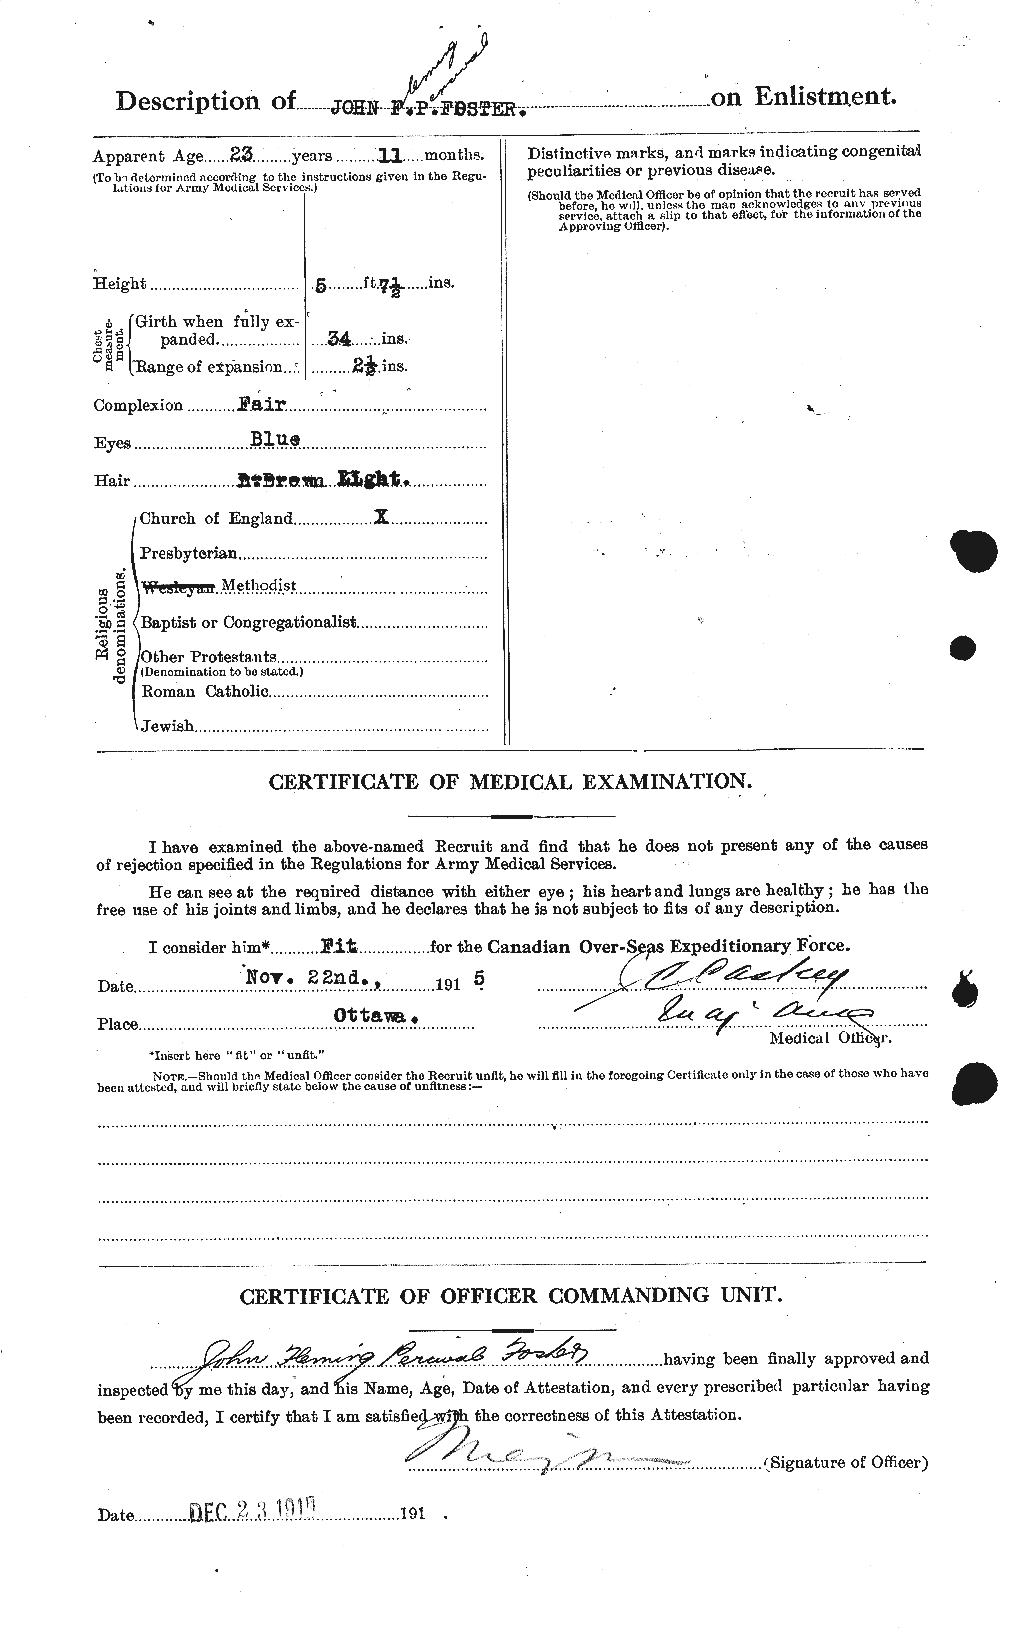 Dossiers du Personnel de la Première Guerre mondiale - CEC 333358b